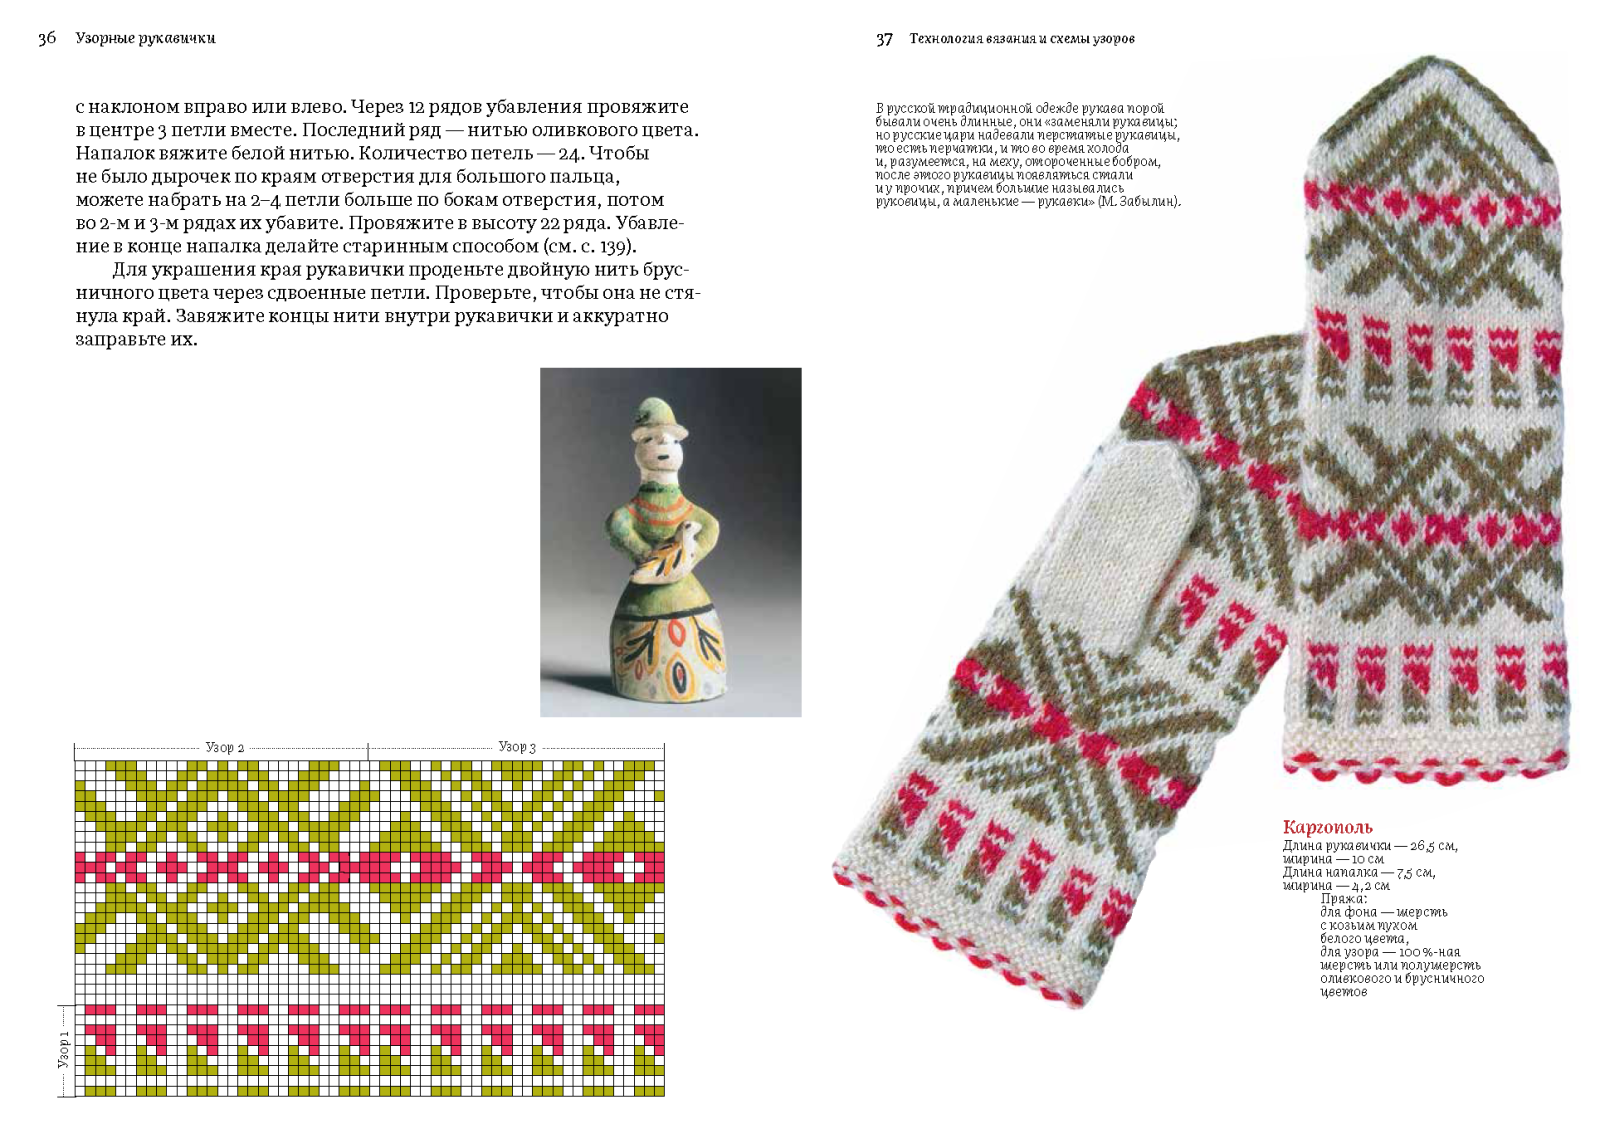 Коми орнамент, как национальная культура народных традиций | Педагогический опыт | Педагог ДОУ